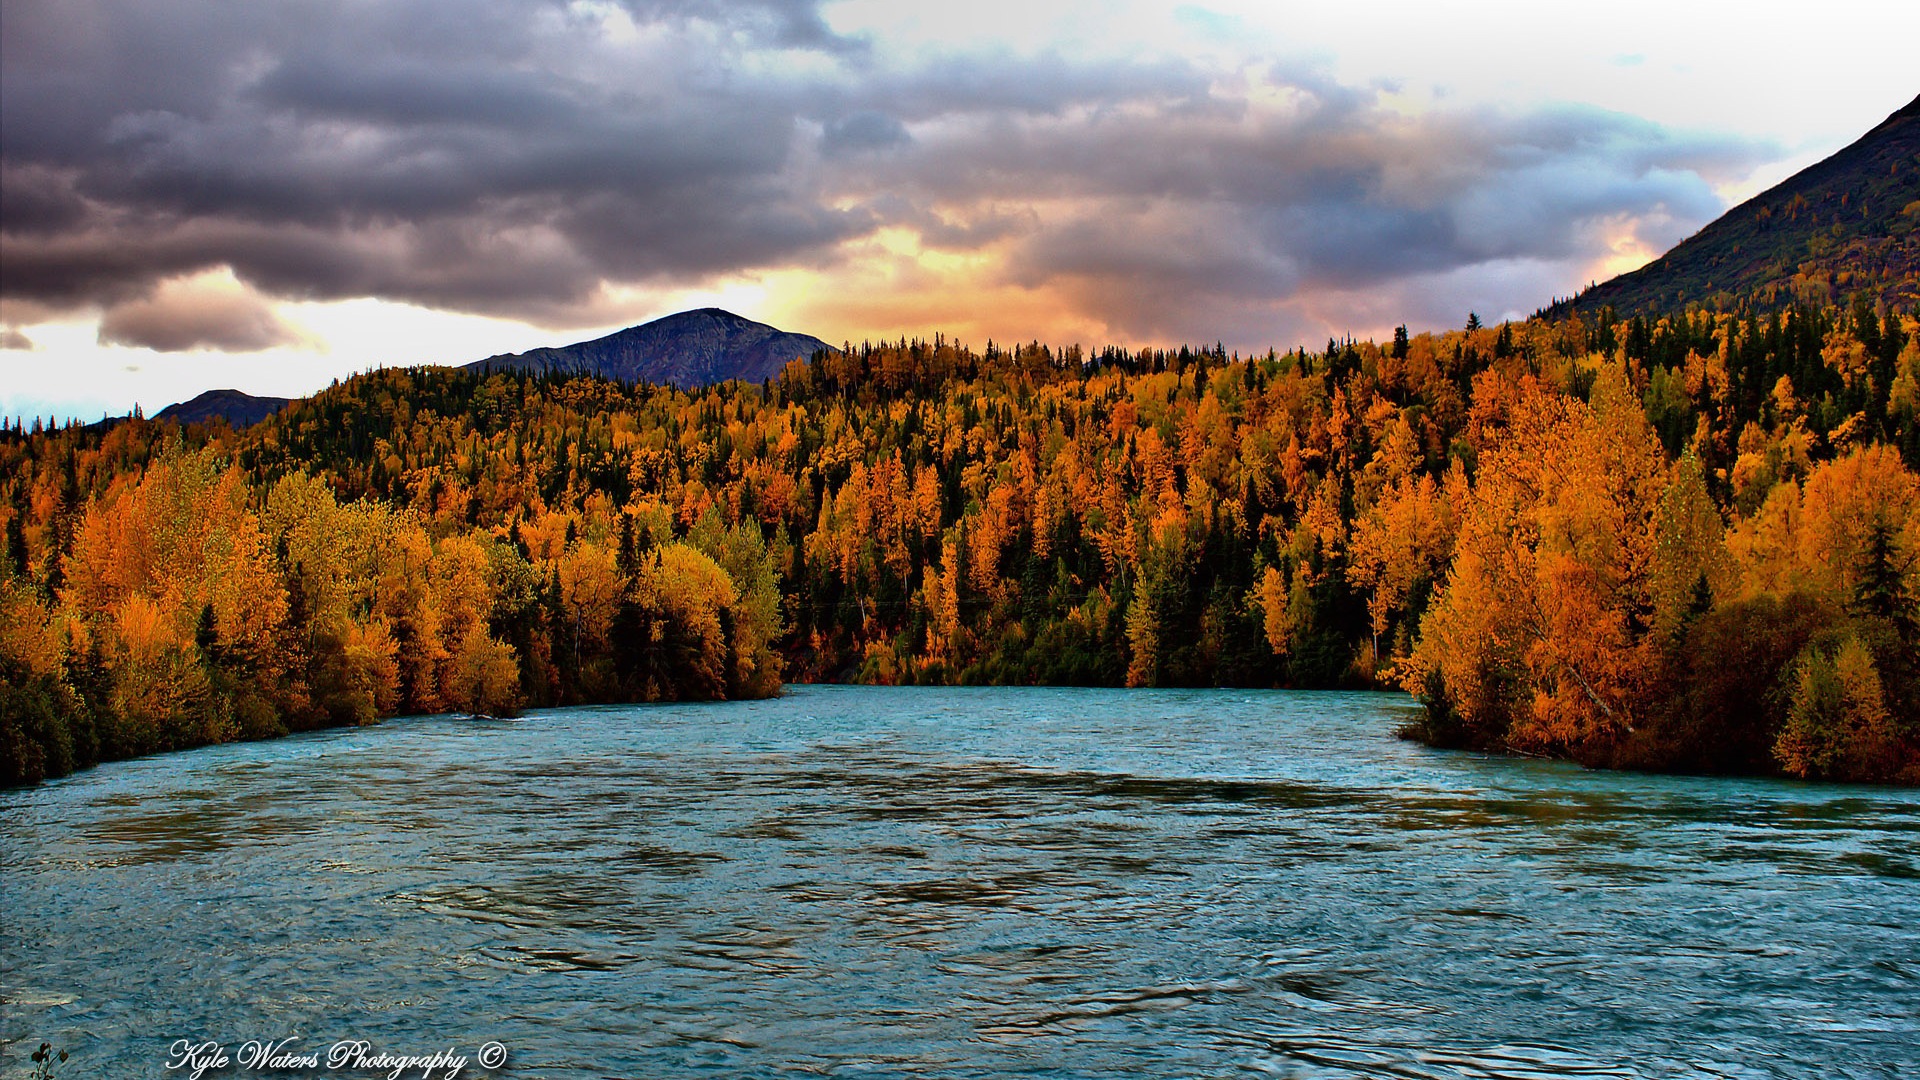 Windows 8 thème fond d'écran: Alaska paysage #1 - 1920x1080